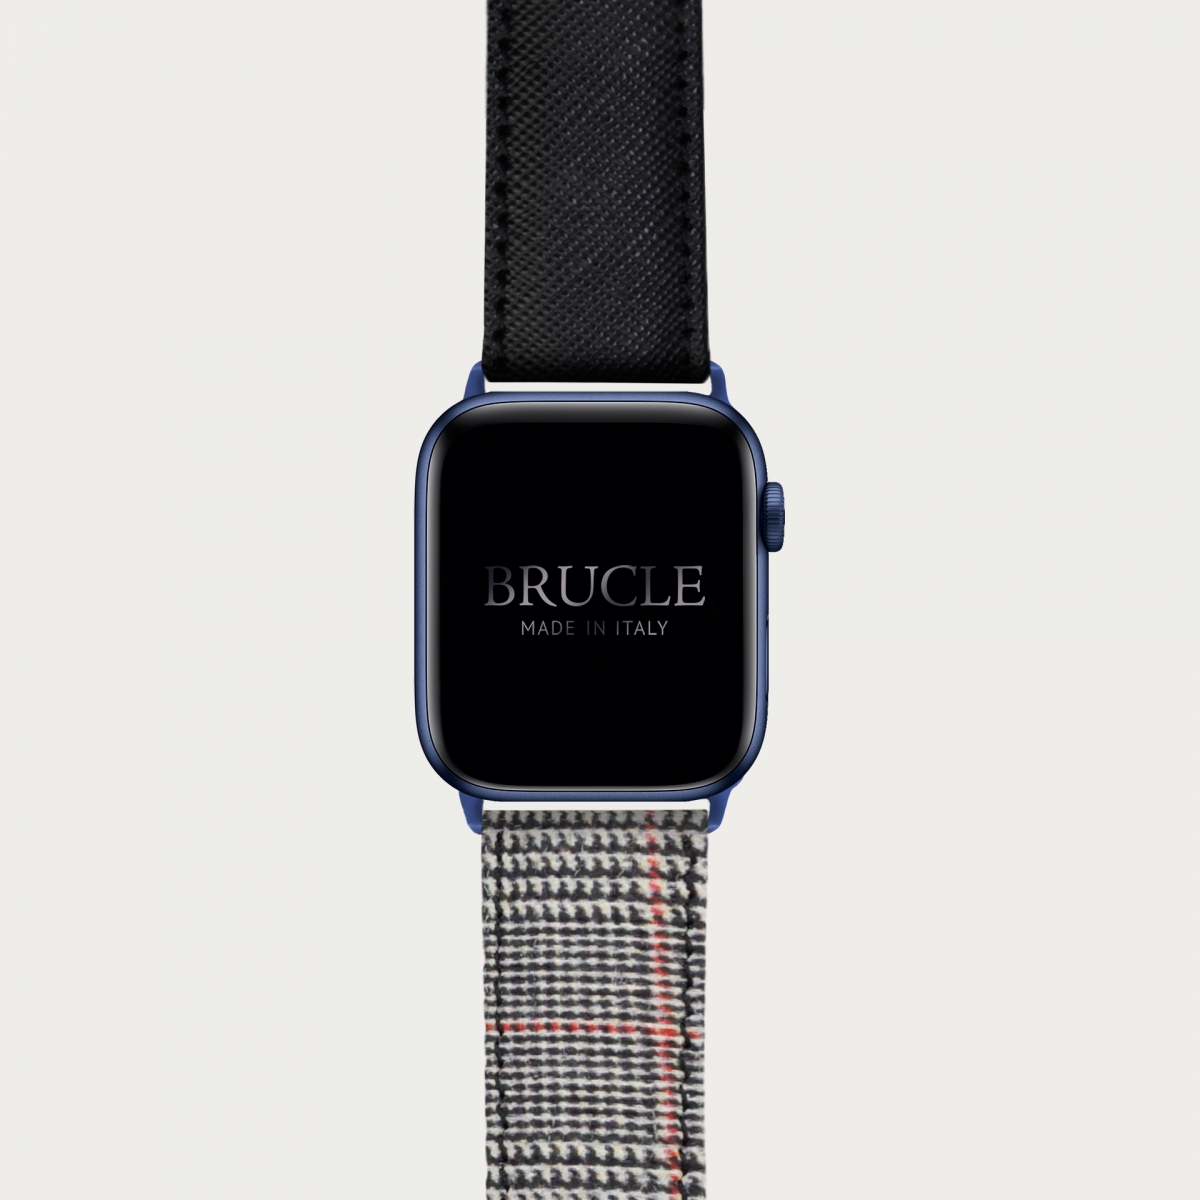 Correa de reloj compatible con Apple Watch / Samsung smartwatch, estampado rojo Saffiano y patrón de espiga